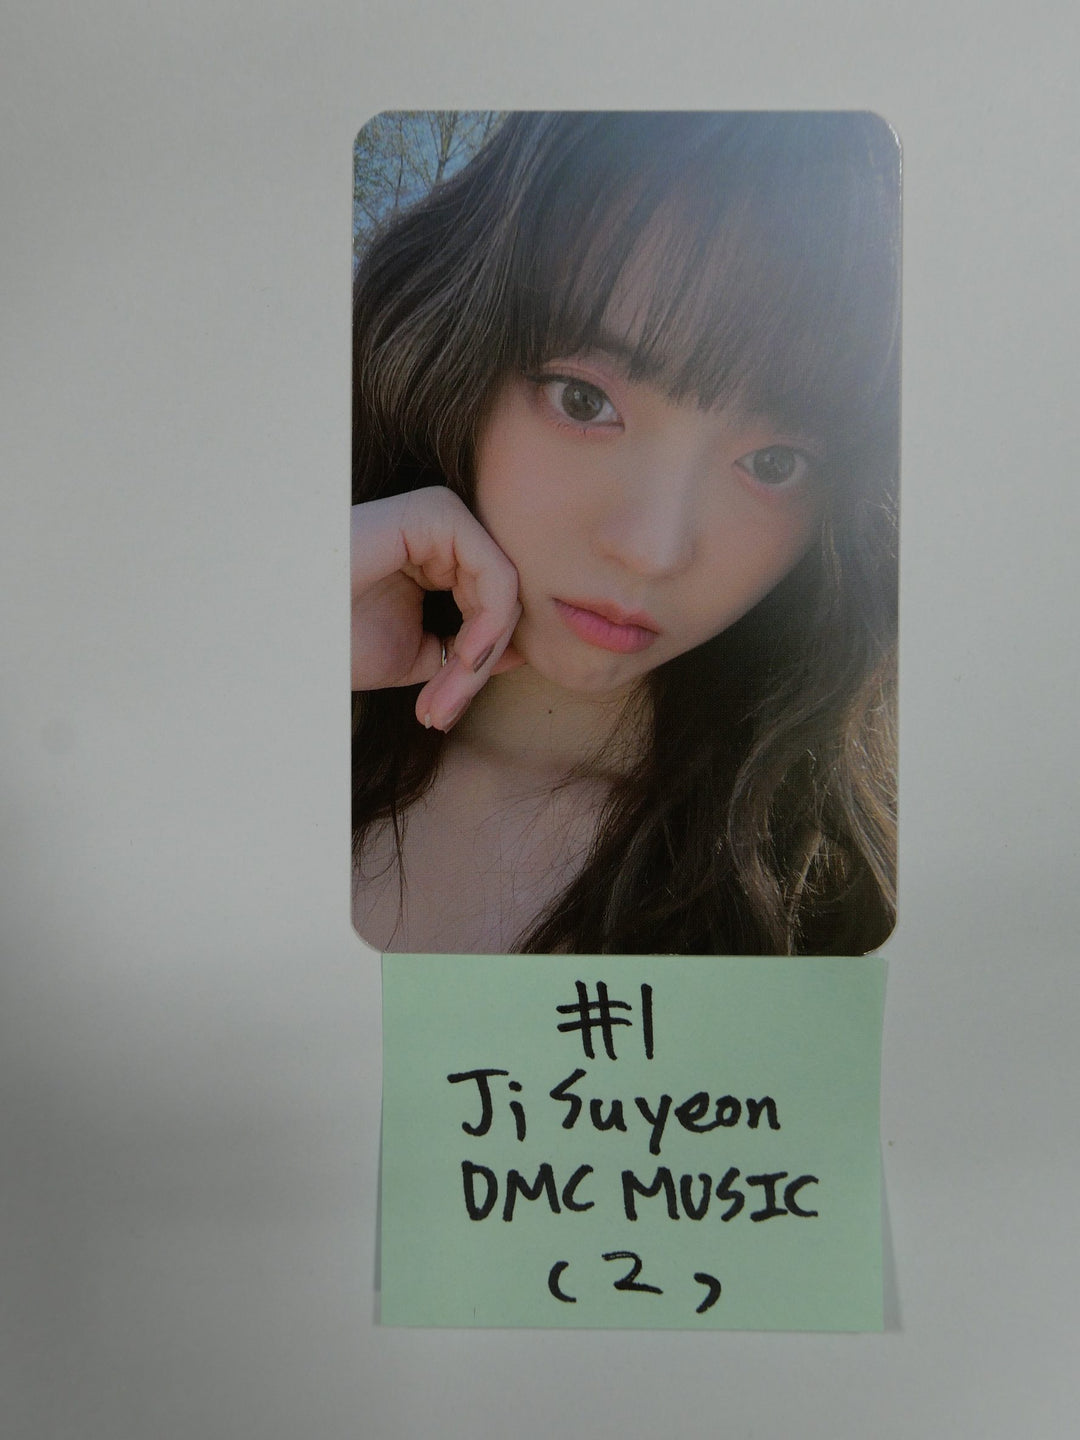 Weki Meki 'I AM ME.'- DMC 뮤직 팬사인회 이벤트 포토카드